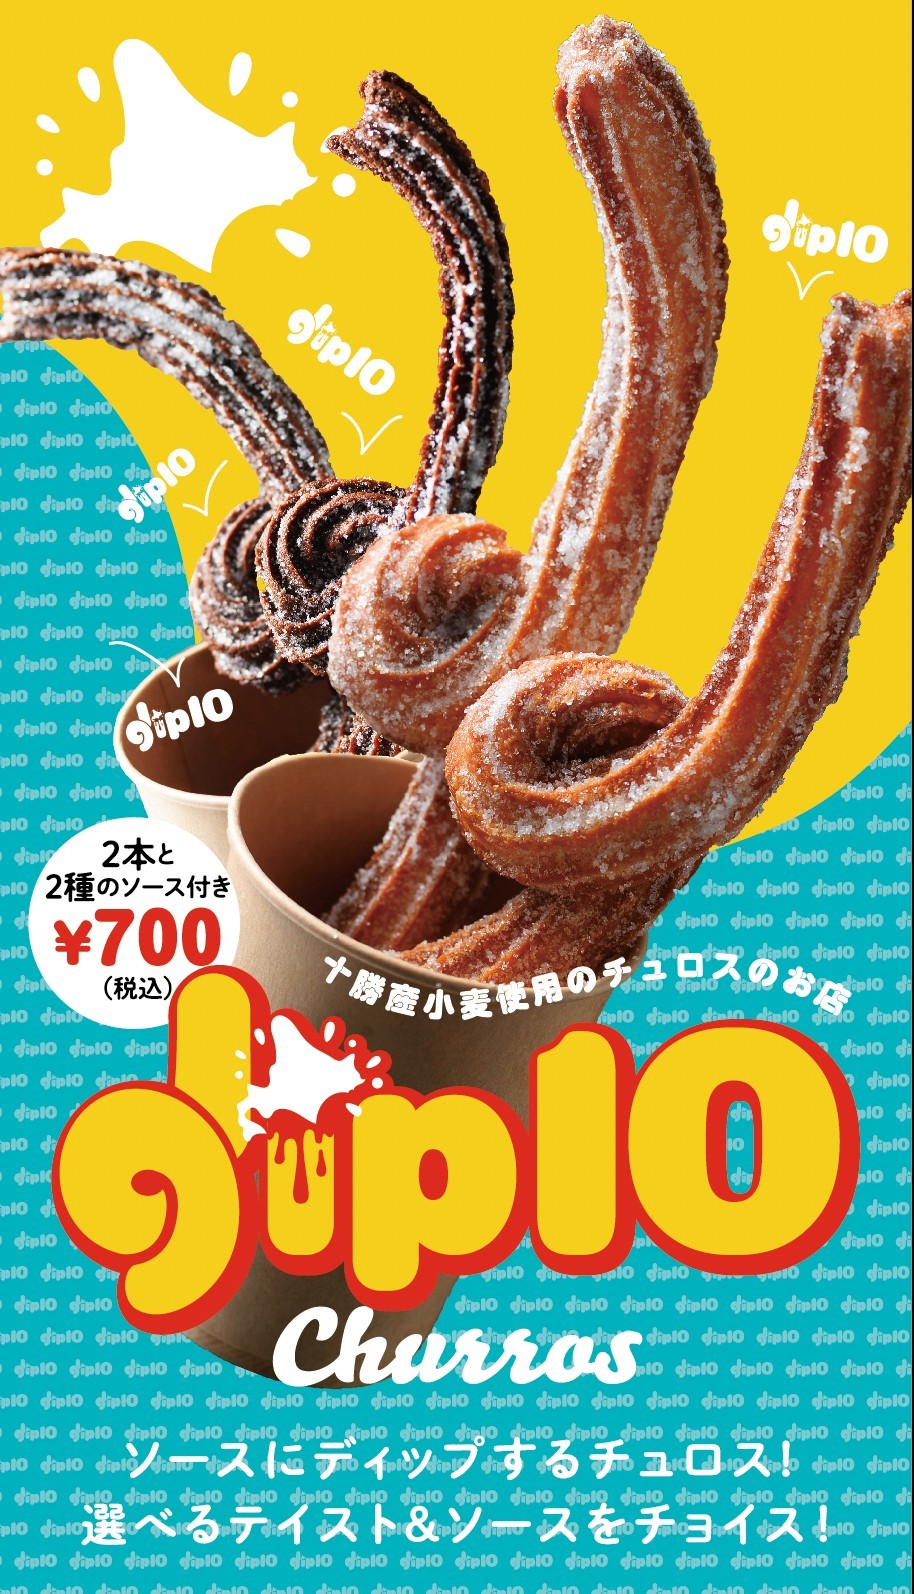 十勝産小麦使用のチュロスのお店『dip10 Churros』を
7月20日より札幌狸小路5丁目アーケード内にオープン！